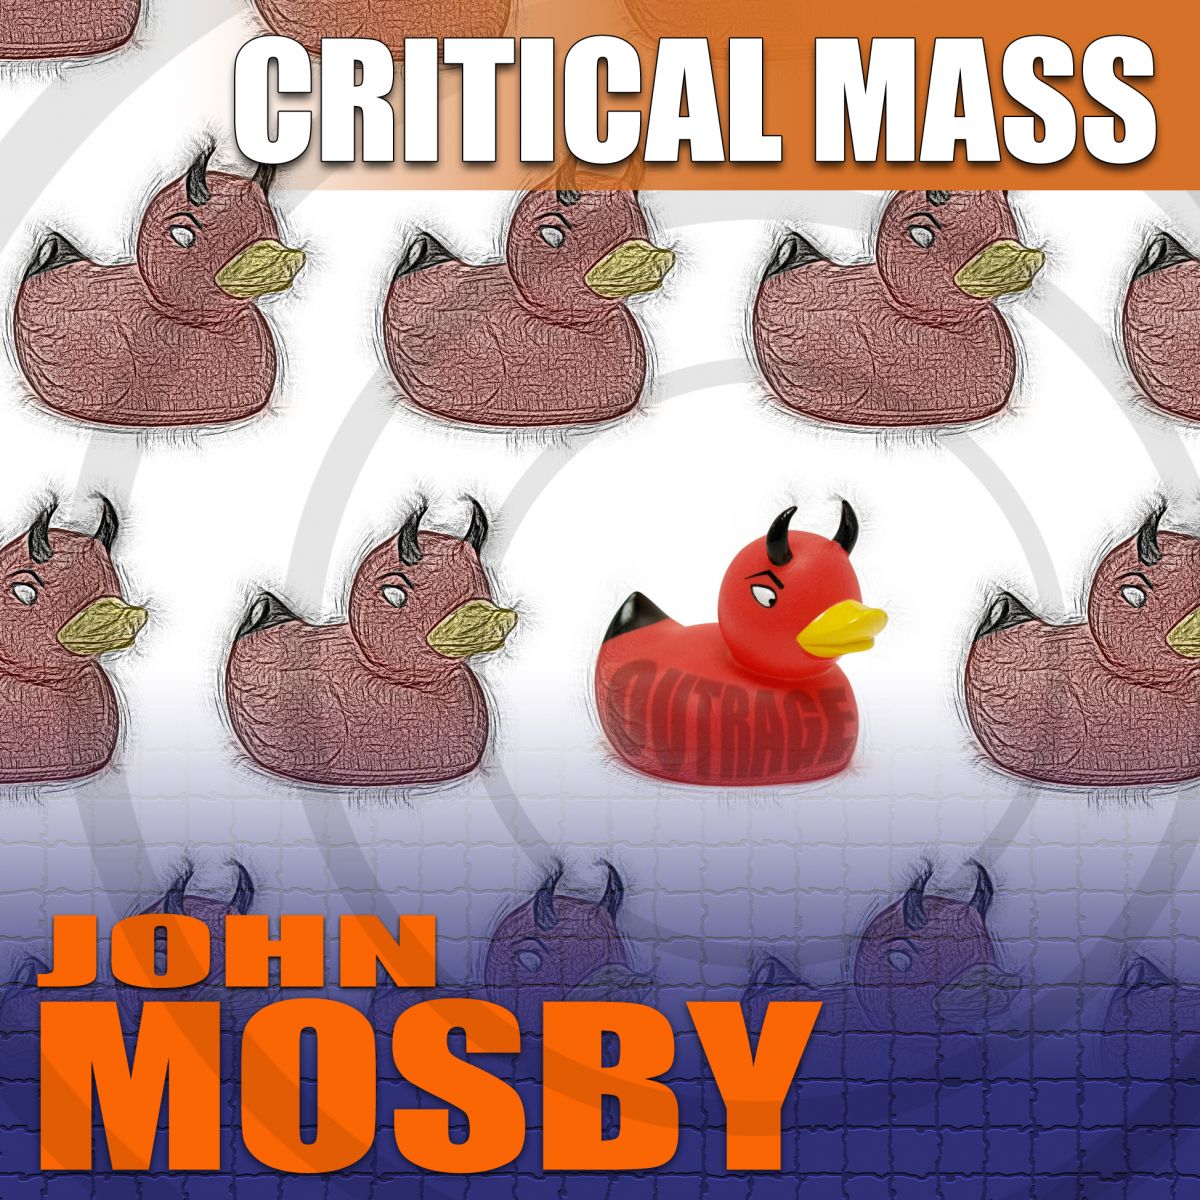 John Mosby's Critical Mass